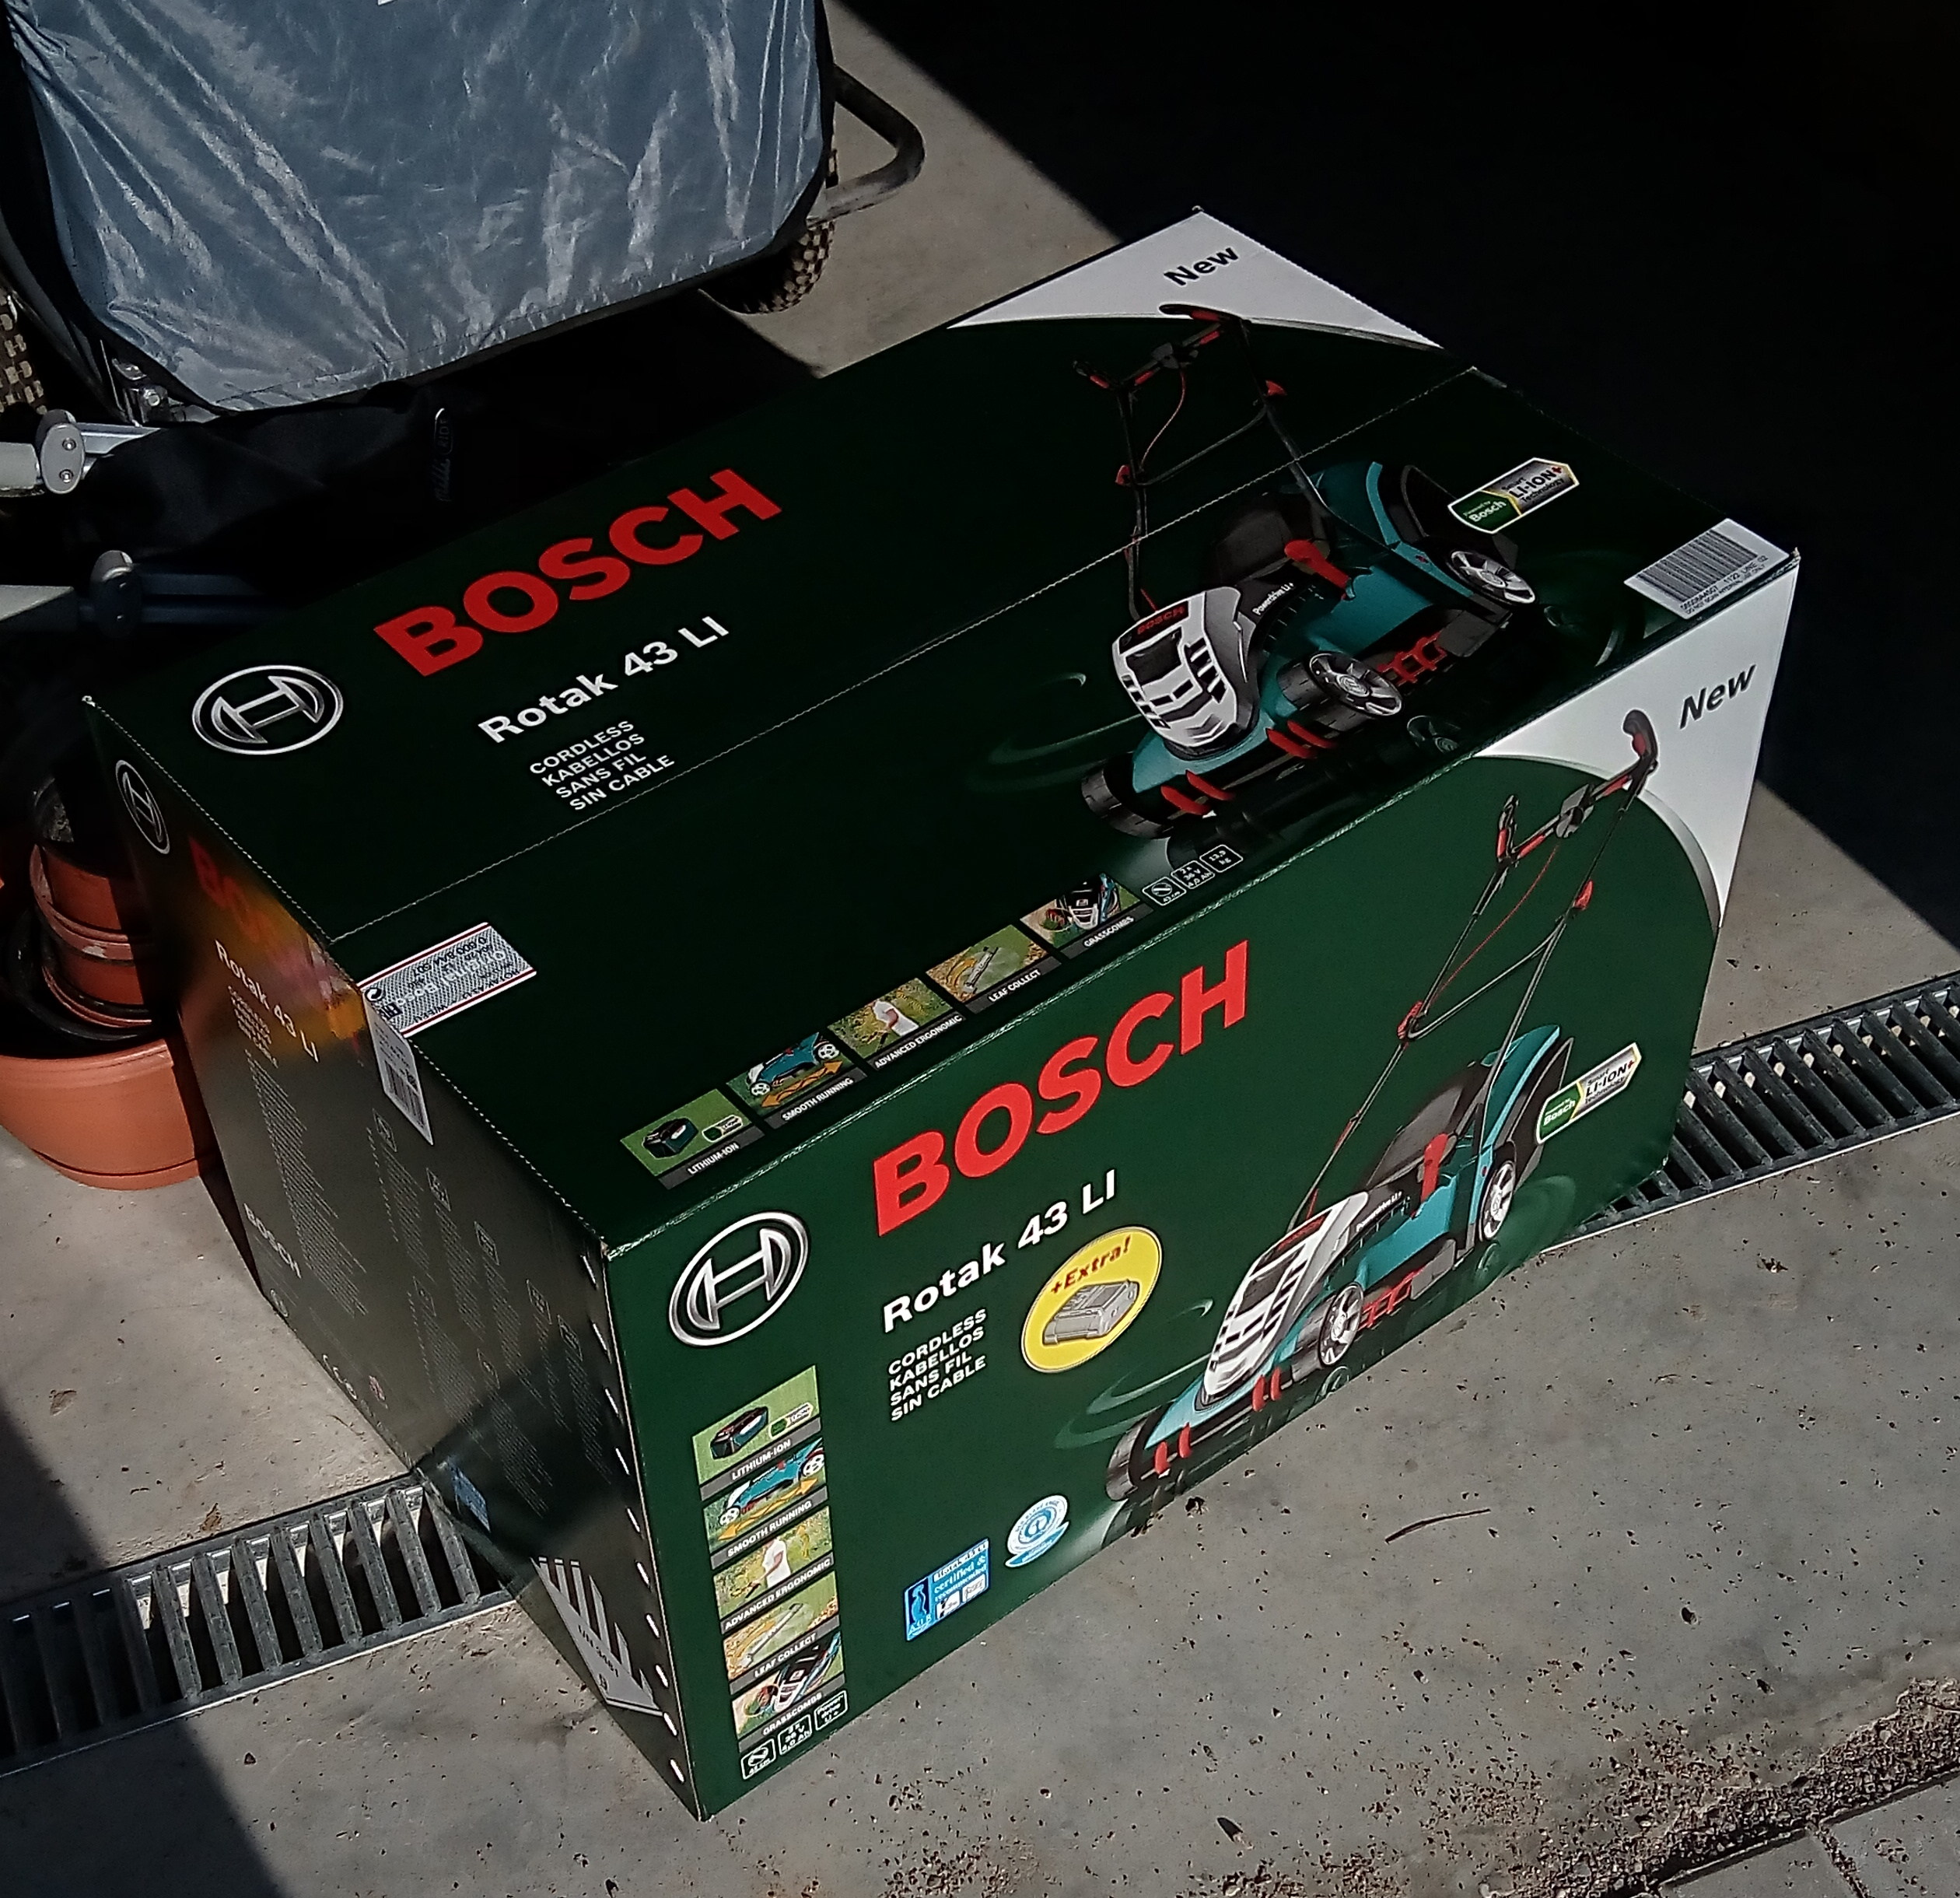 Bosch Rotak 43 Li